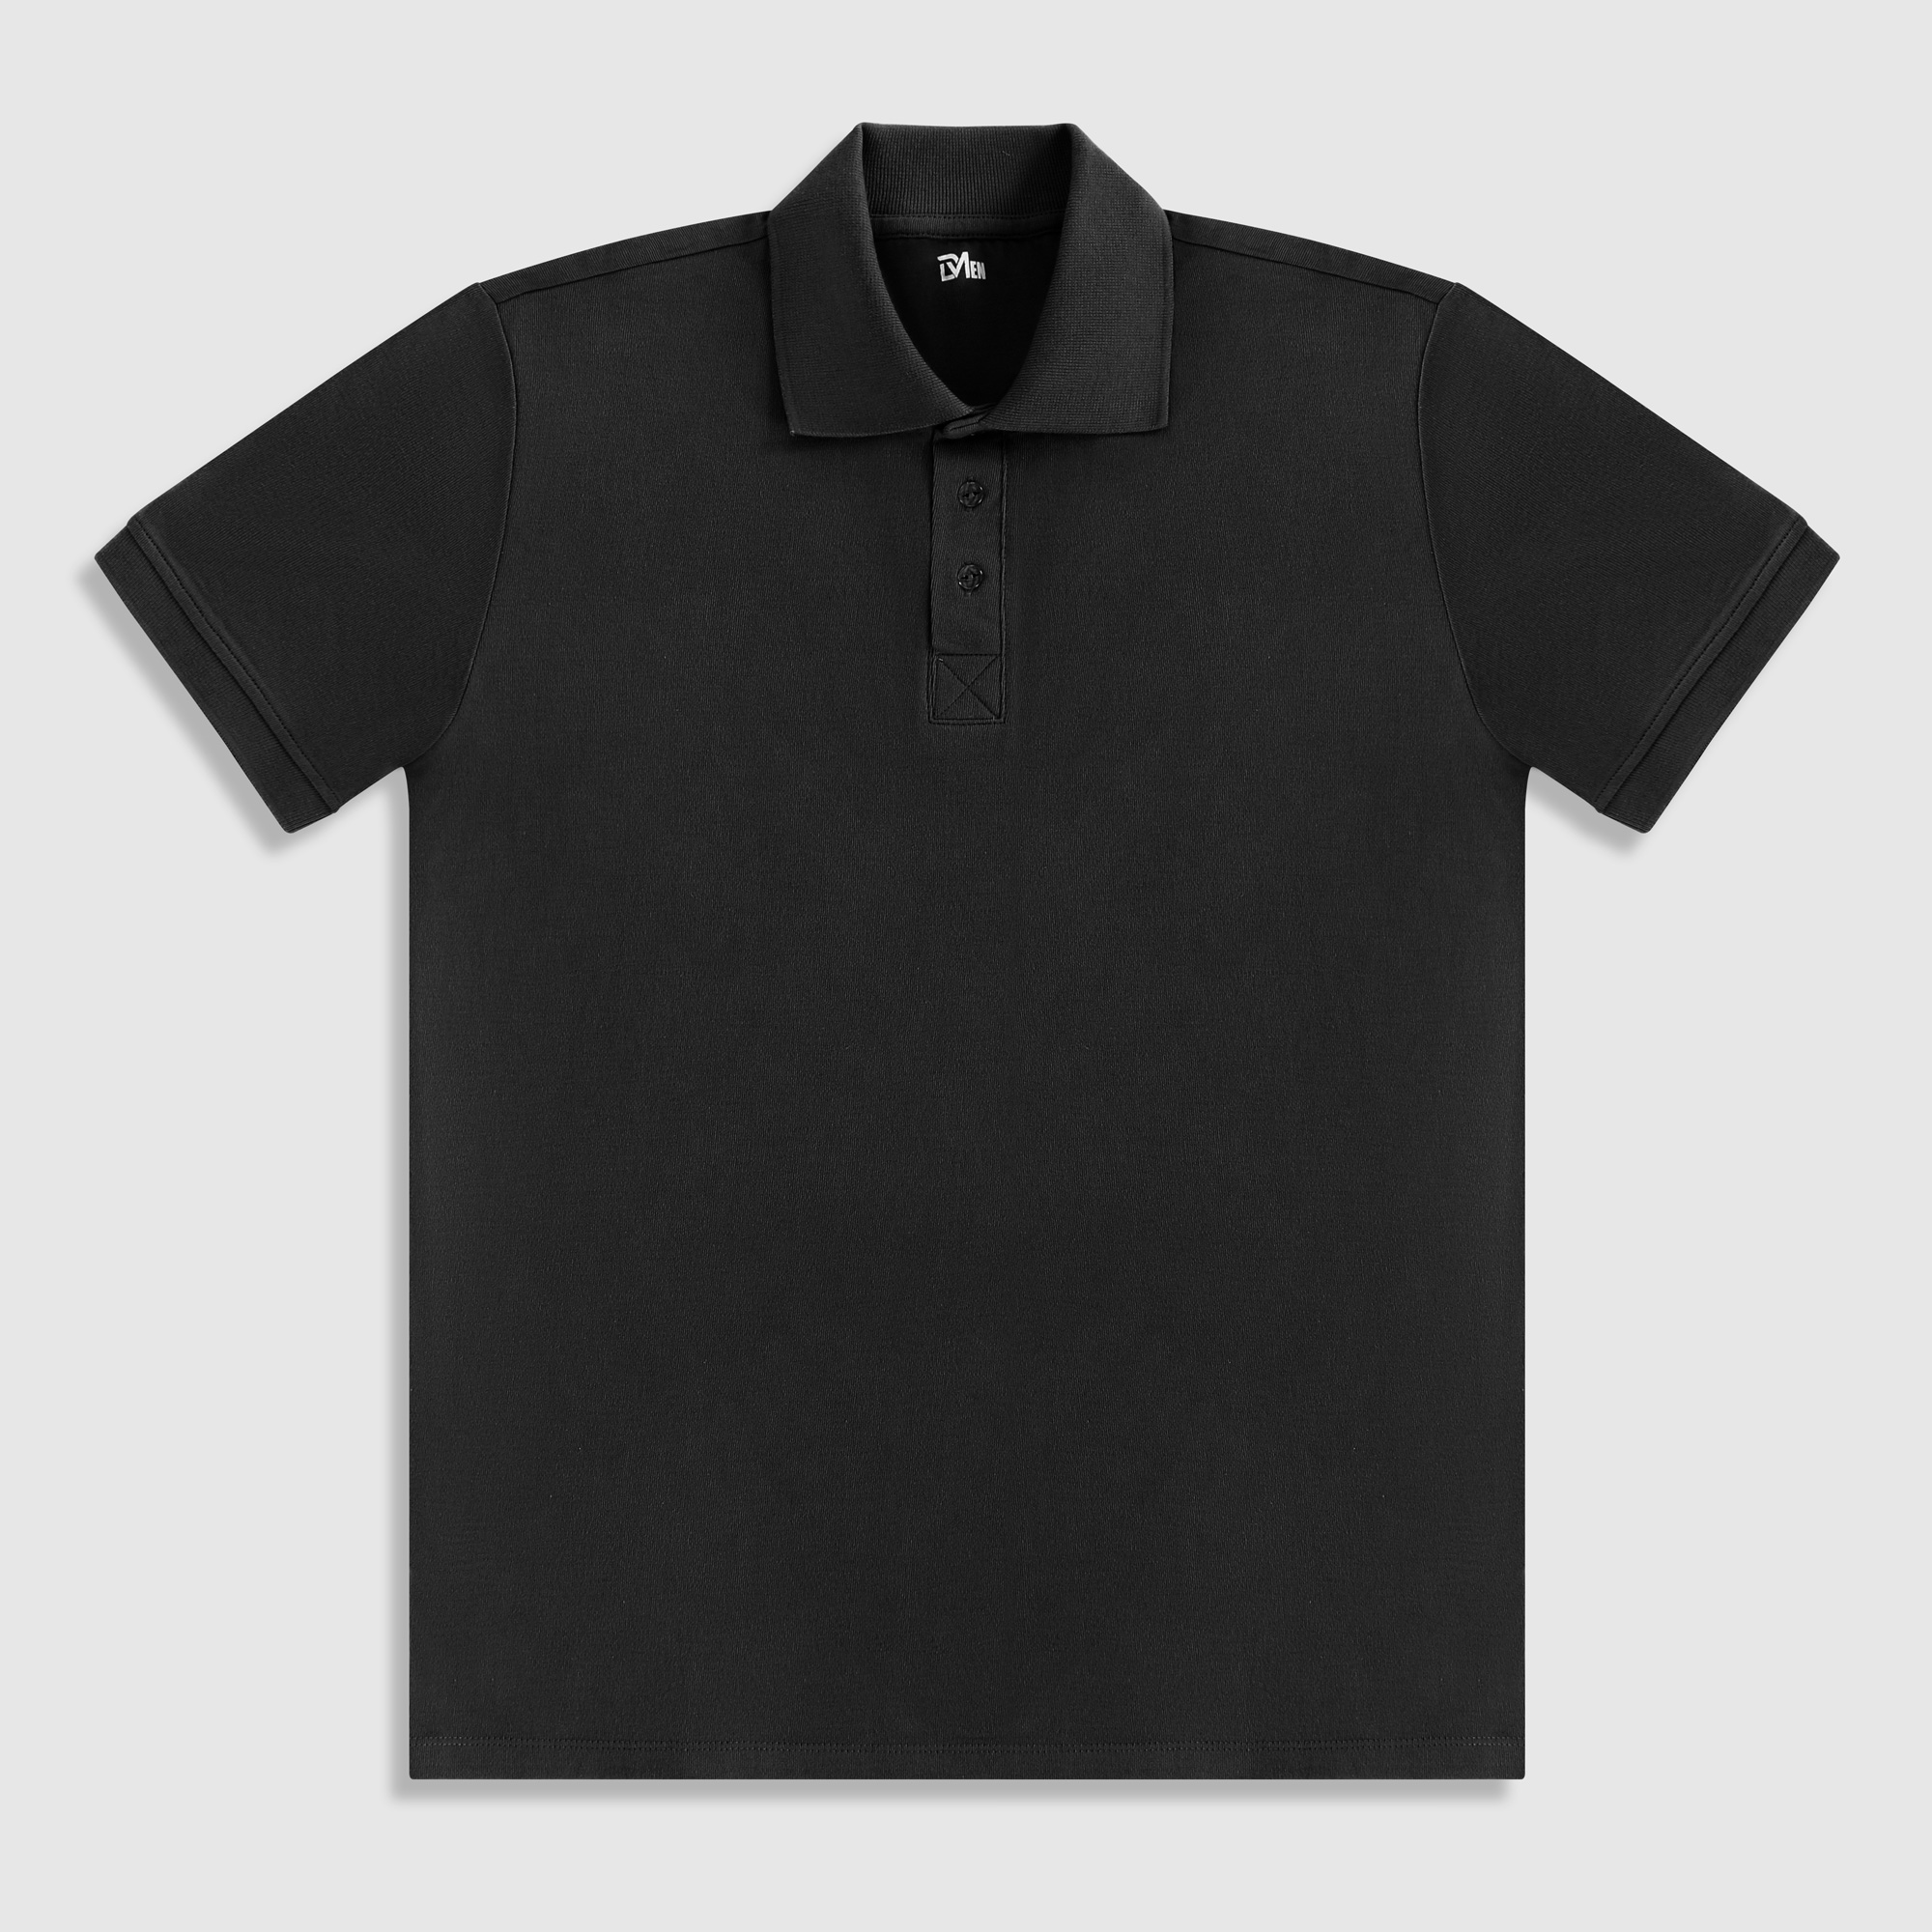 Рубашка мужская Diva Teks поло черная, цвет черный, размер M